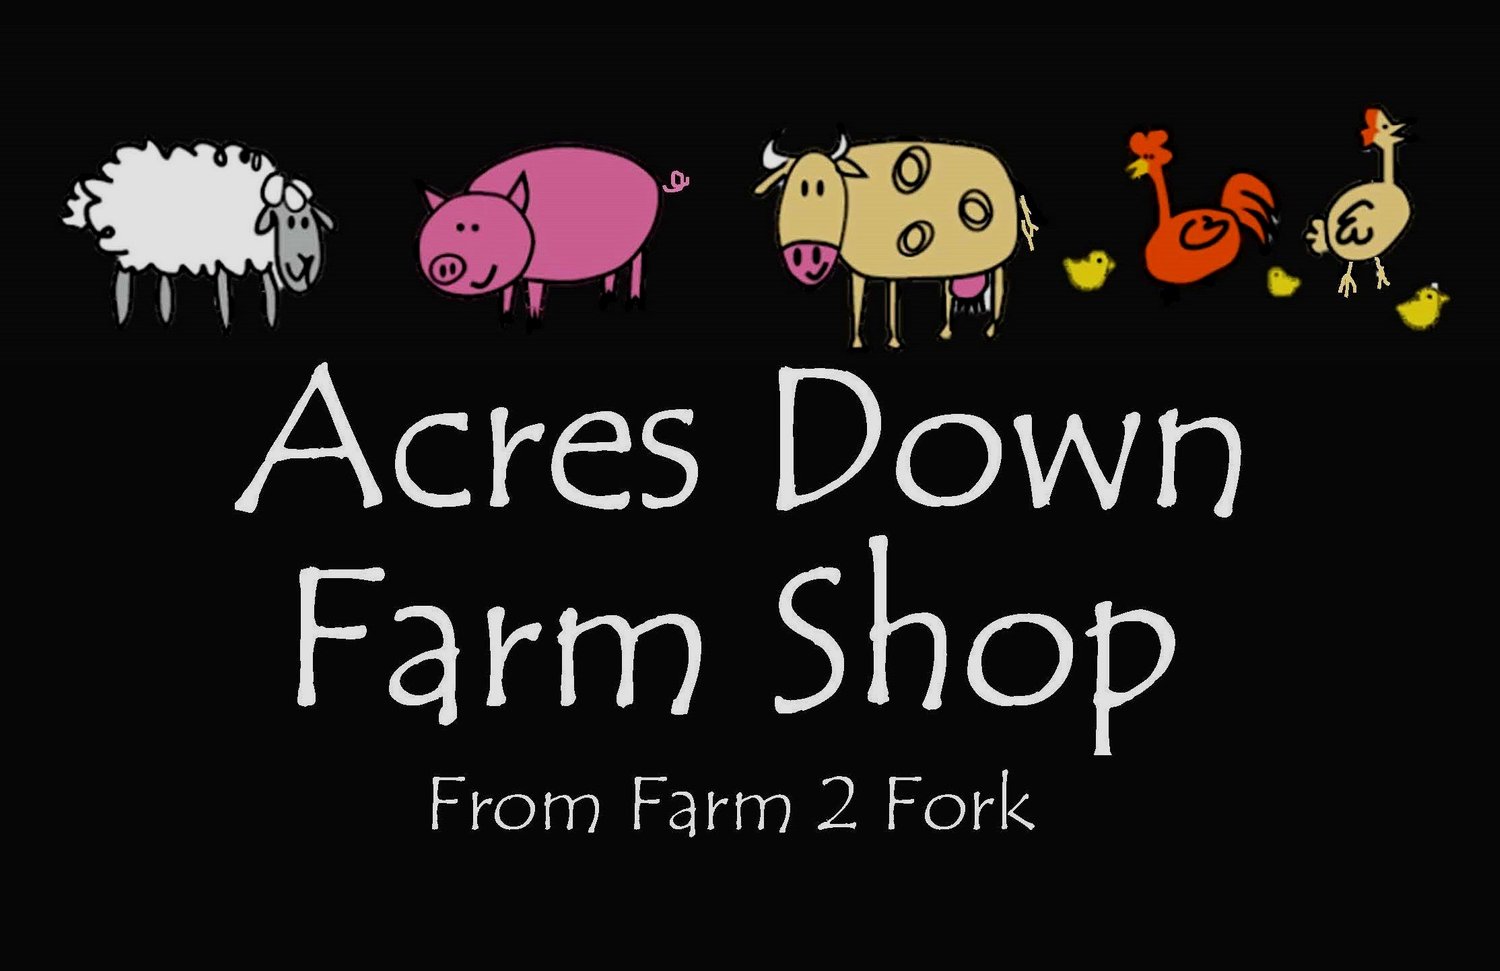 Acres Down Farm Shop